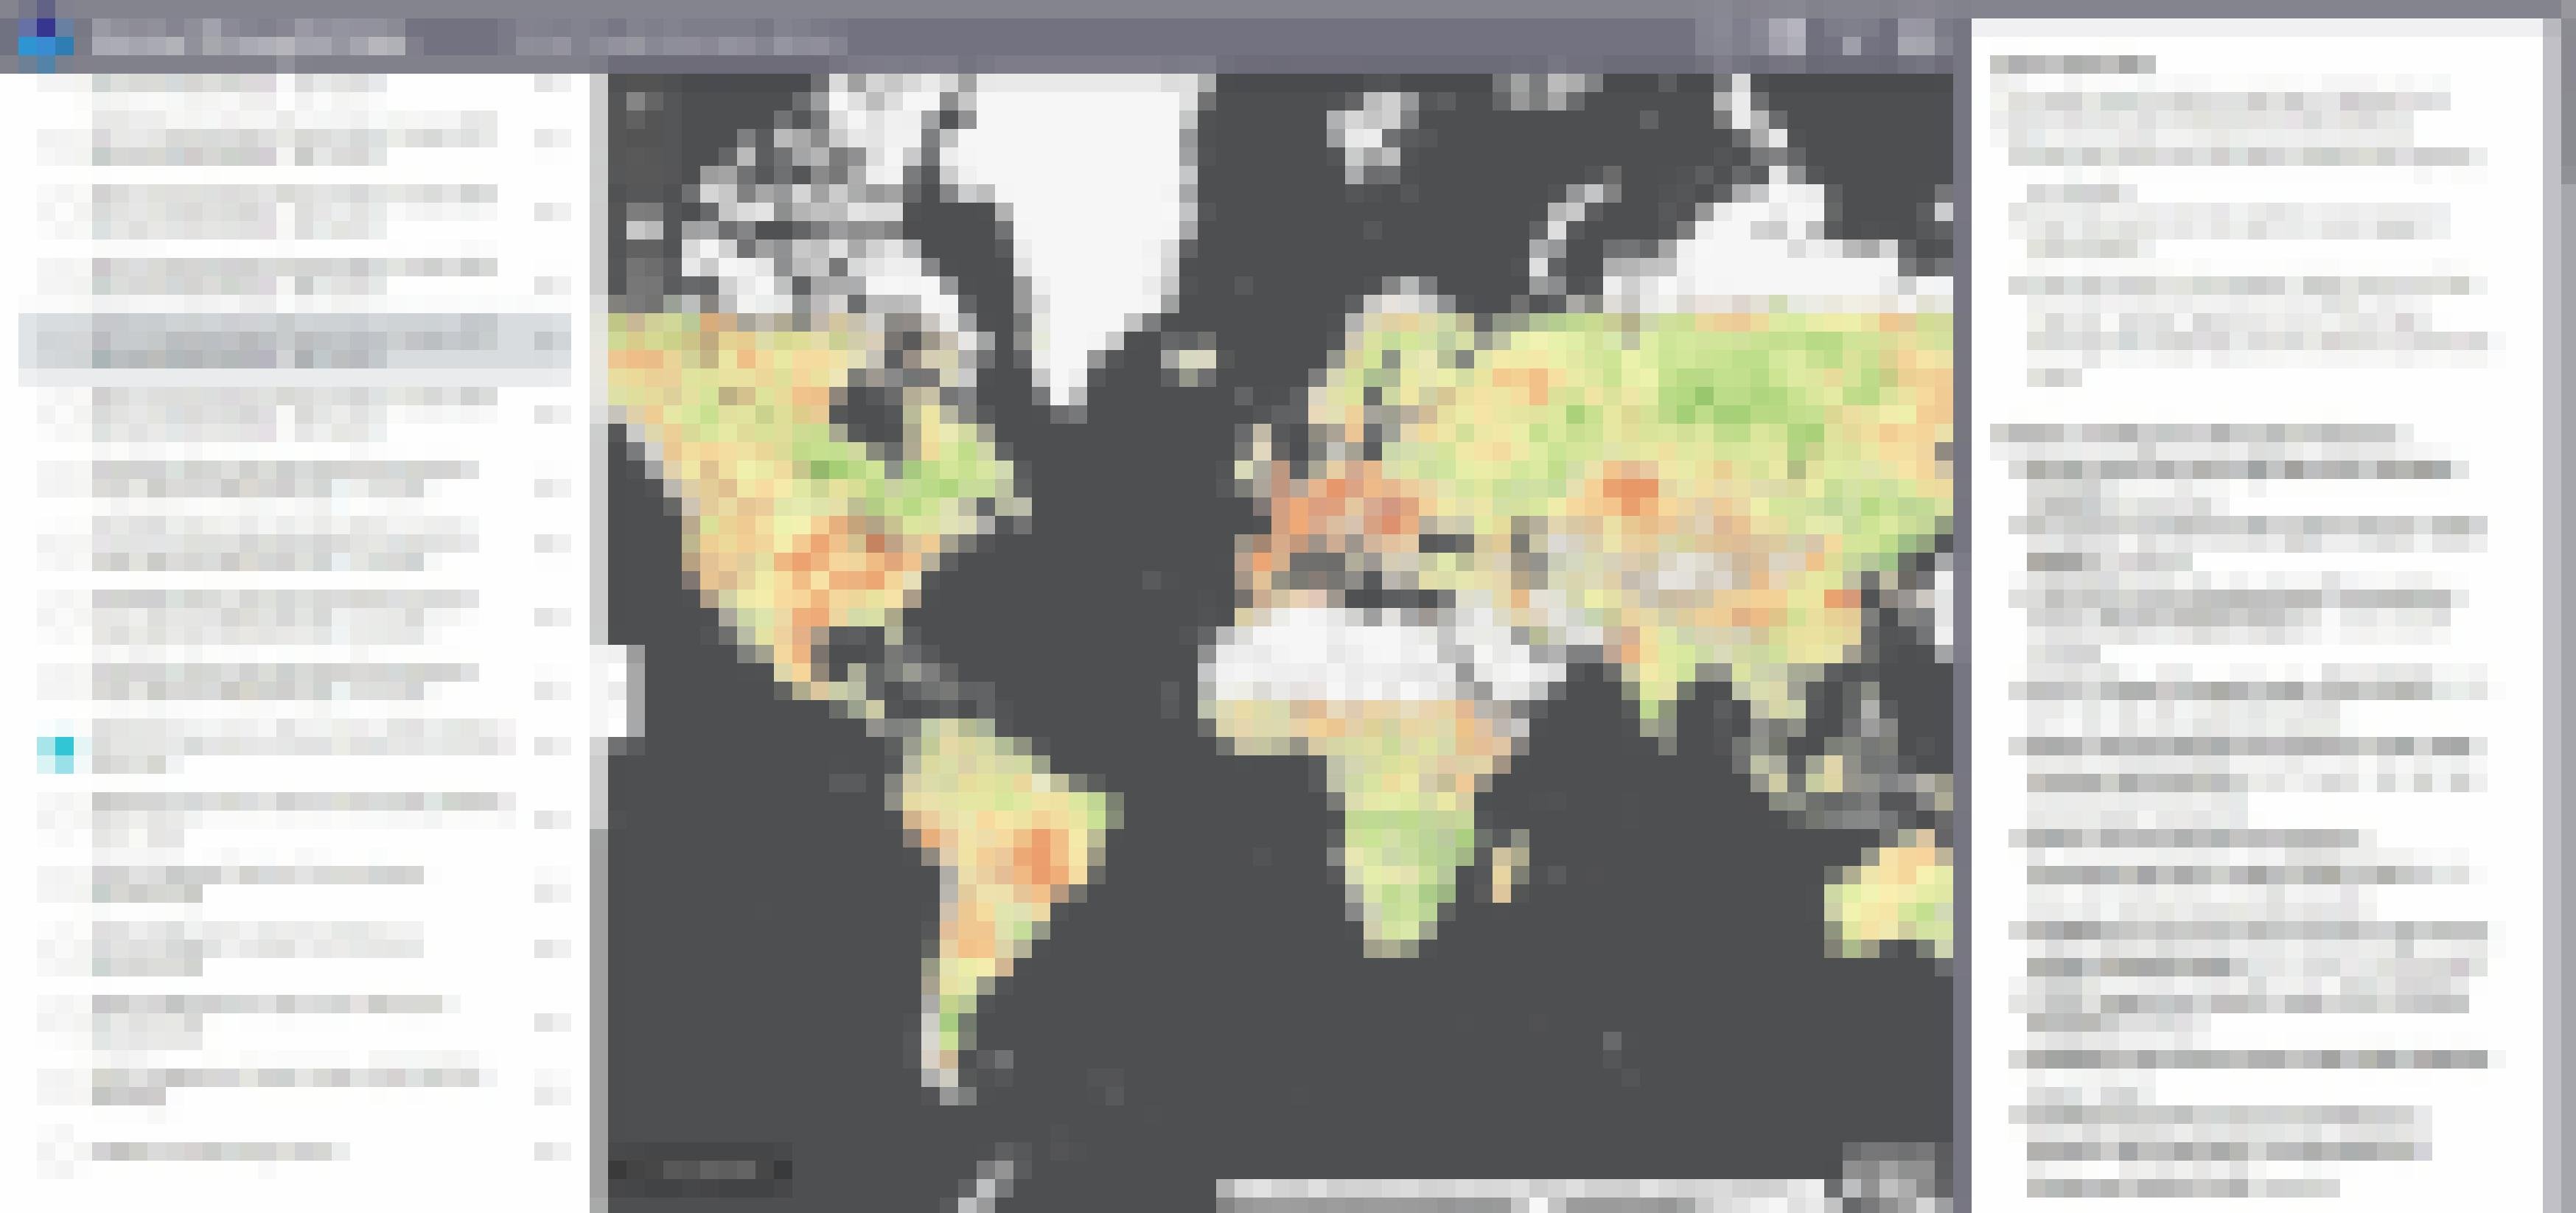 Die Verdunstung ist in Westeuropa besonders hoch, zeigt die Karte des internationalen Projekts „Global Drought Information Systems“.